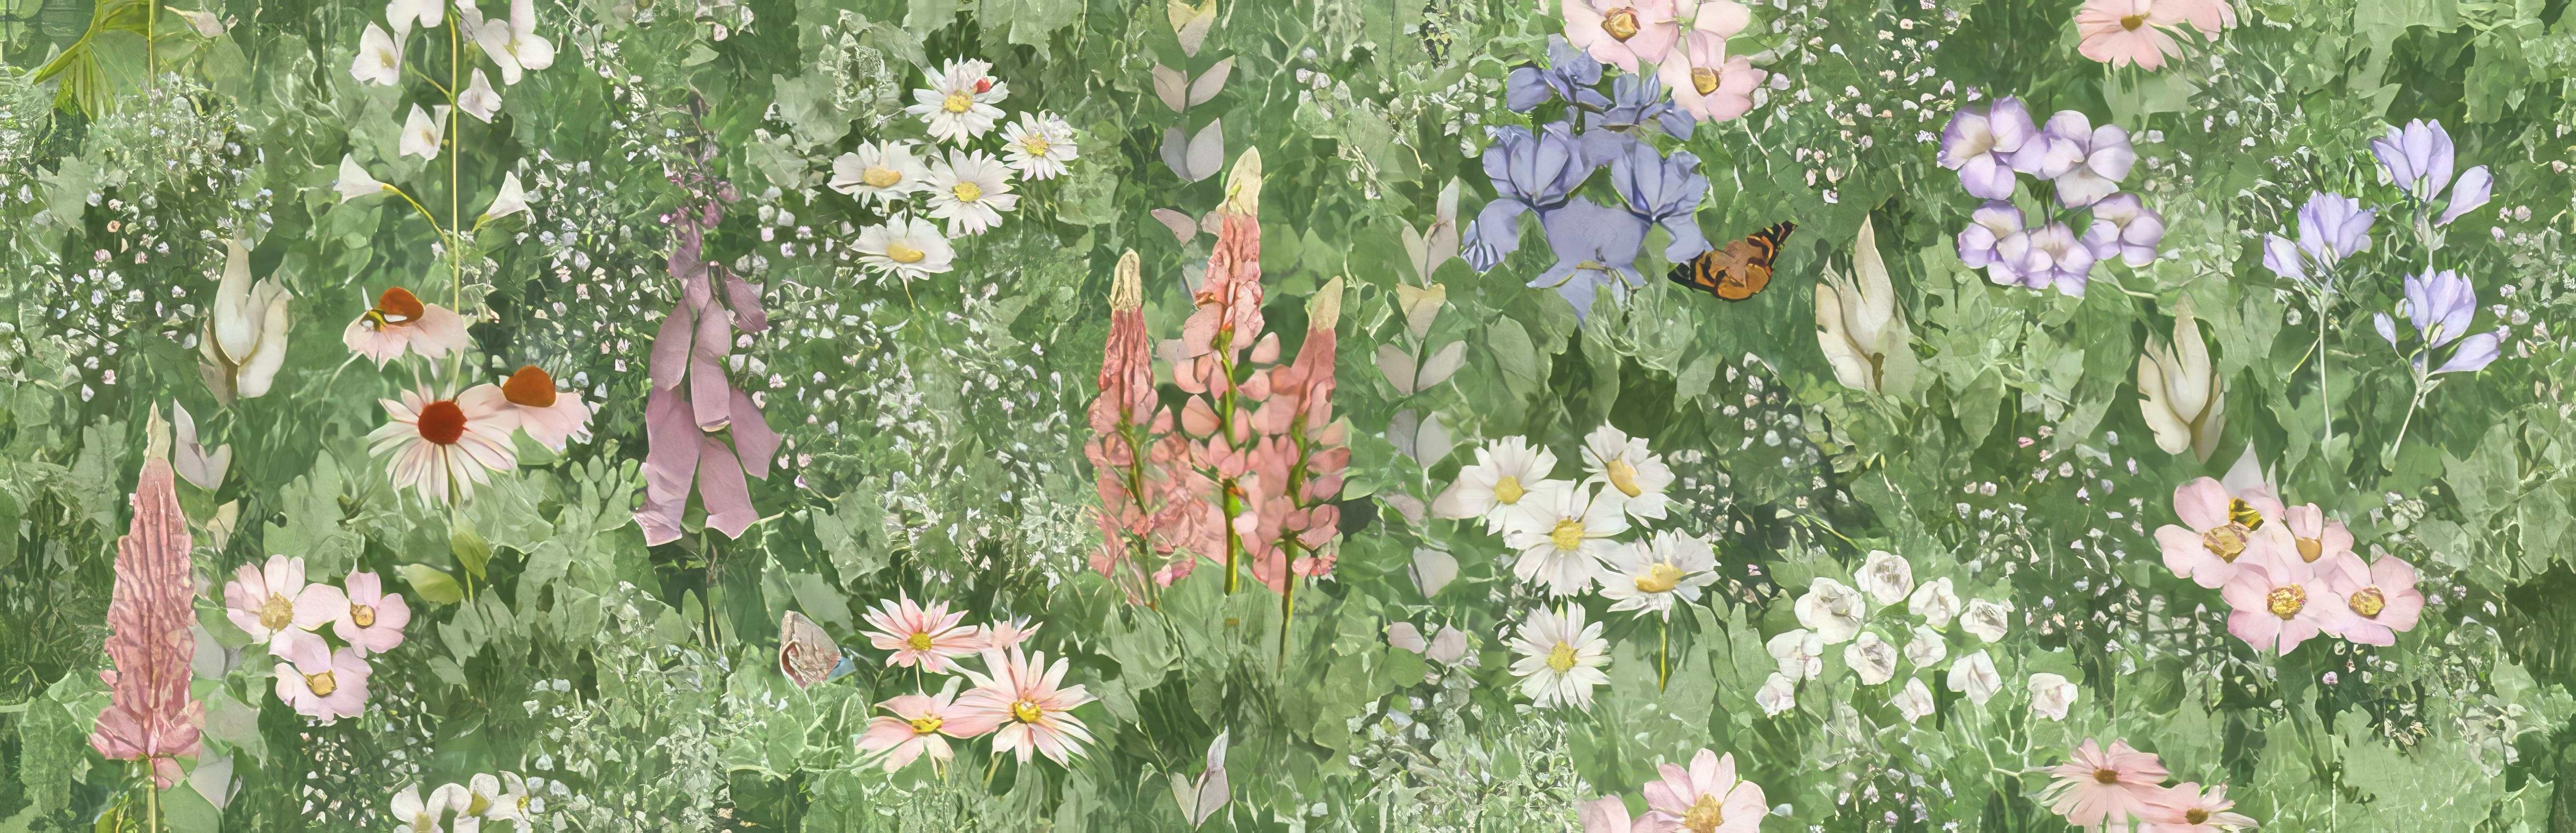 English Garden Floral Single Tile - Hyperion Tiles